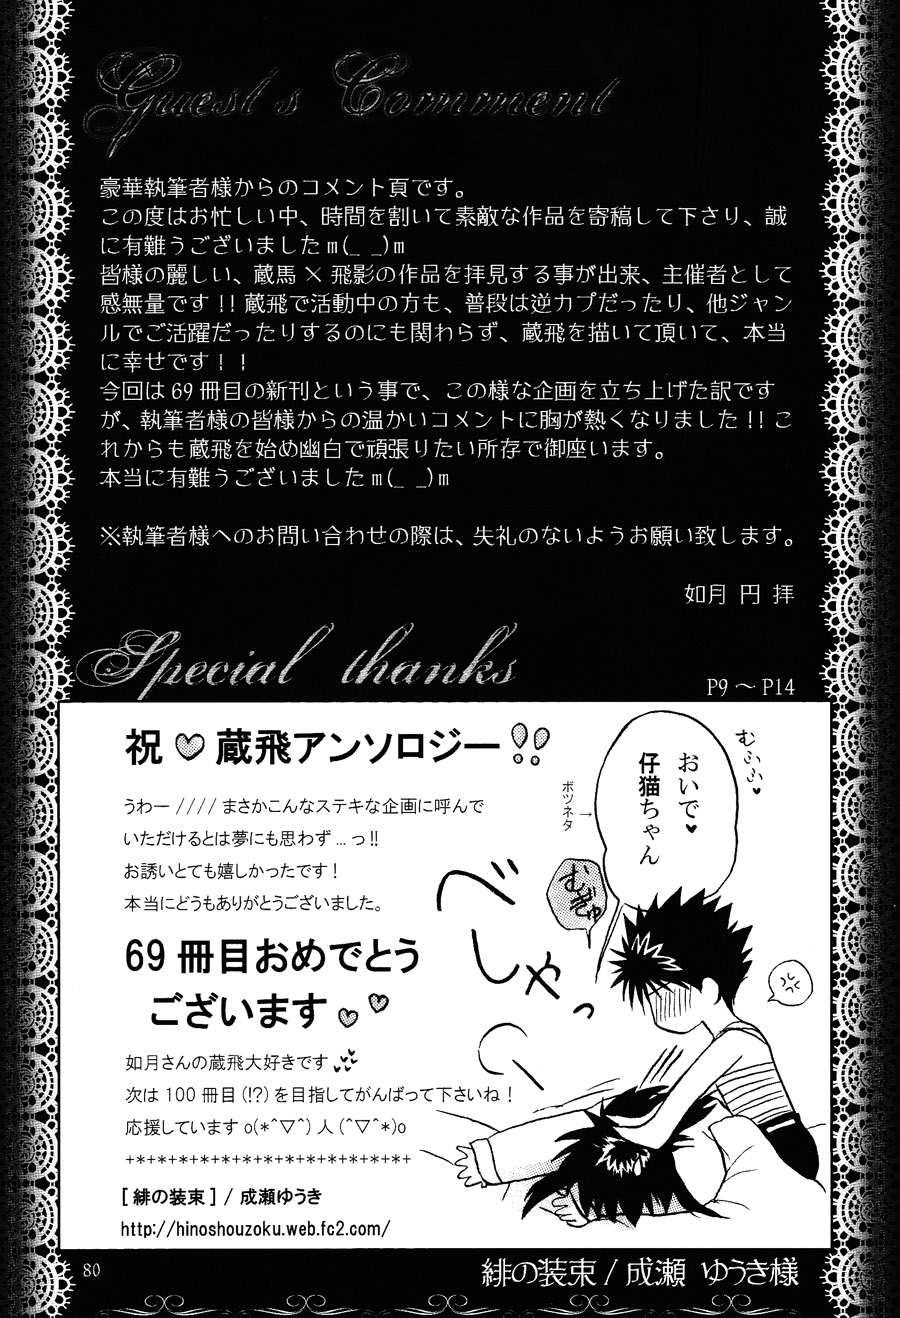 【漫画】Box Twin/如月円《69》NO.69 - 页 2 Img14619